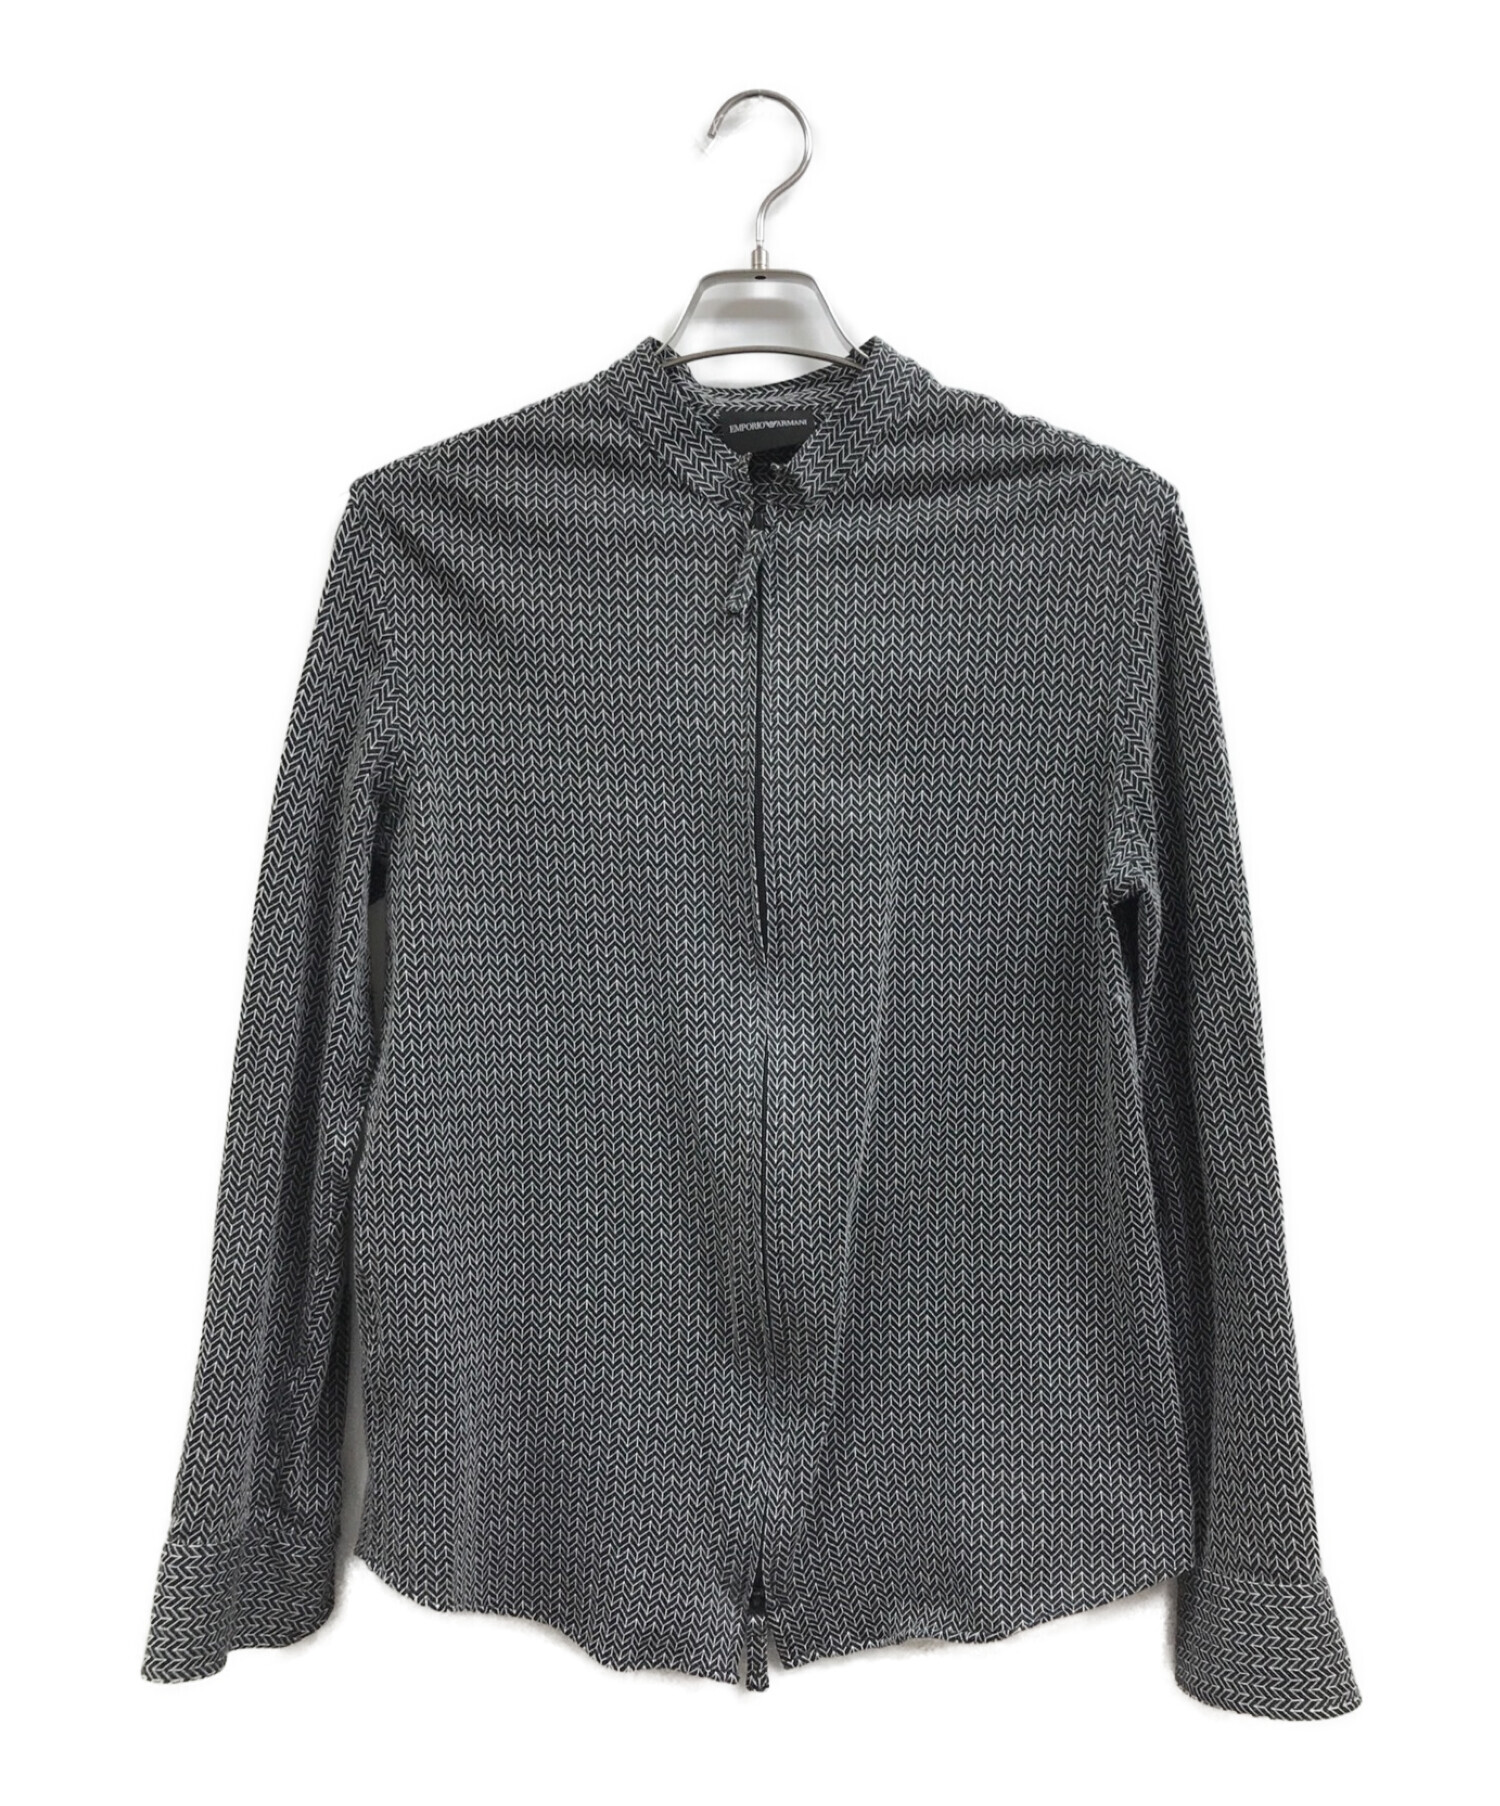 EMPORIO ARMANI エンポリオアルマーニ シャツジャケット ブラック サイズ:M